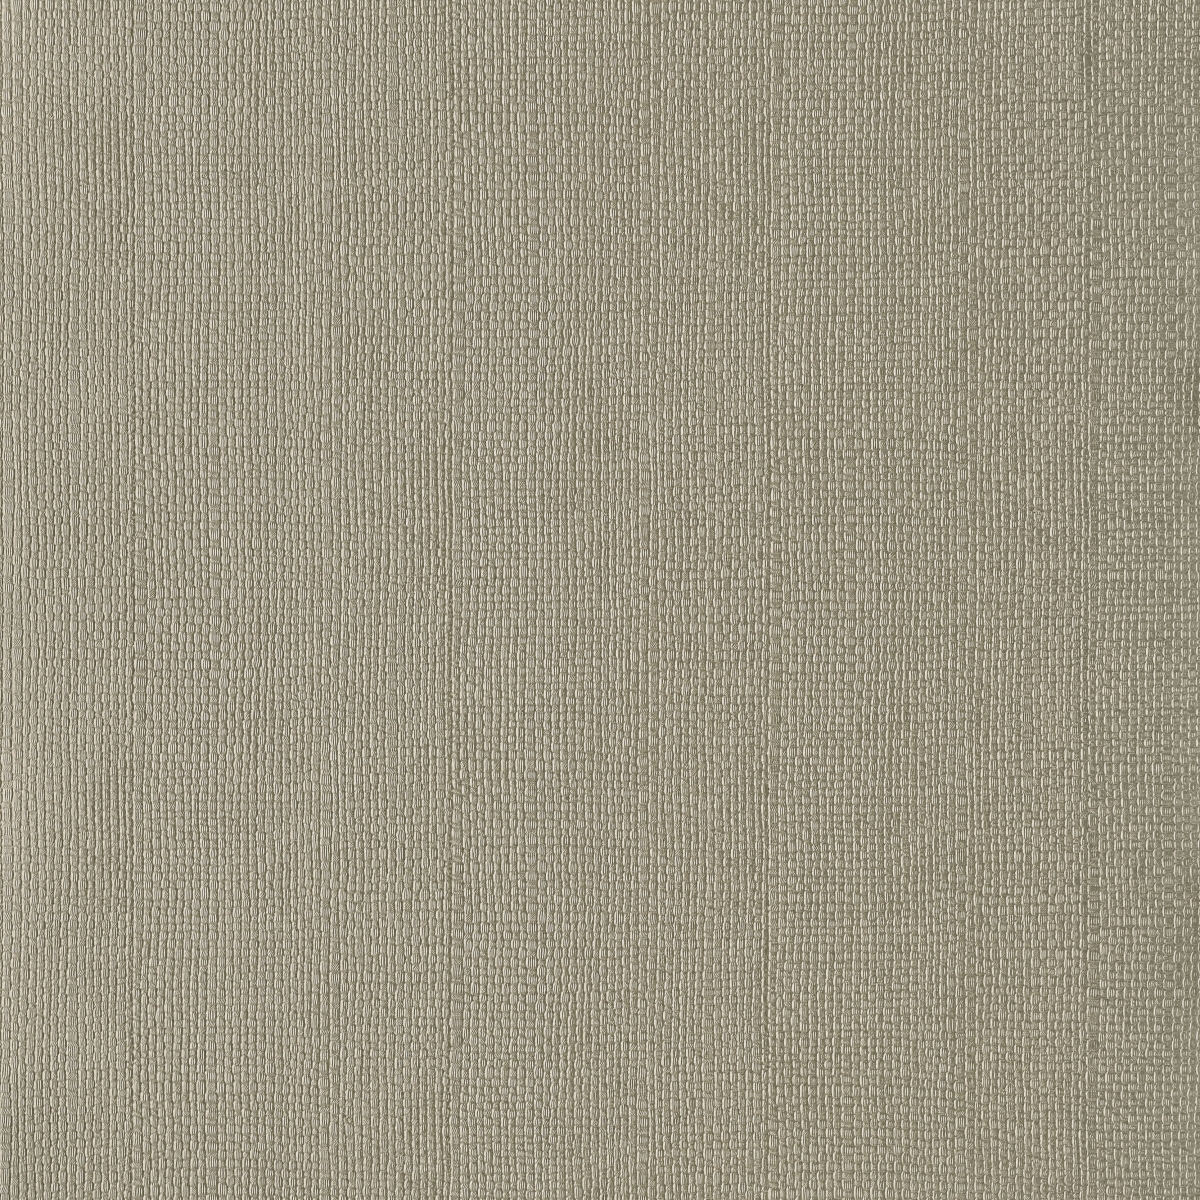 Tapet Serena, 1838 Wallcoverings, 5.3mp / rola, Tapet living, Tapet 